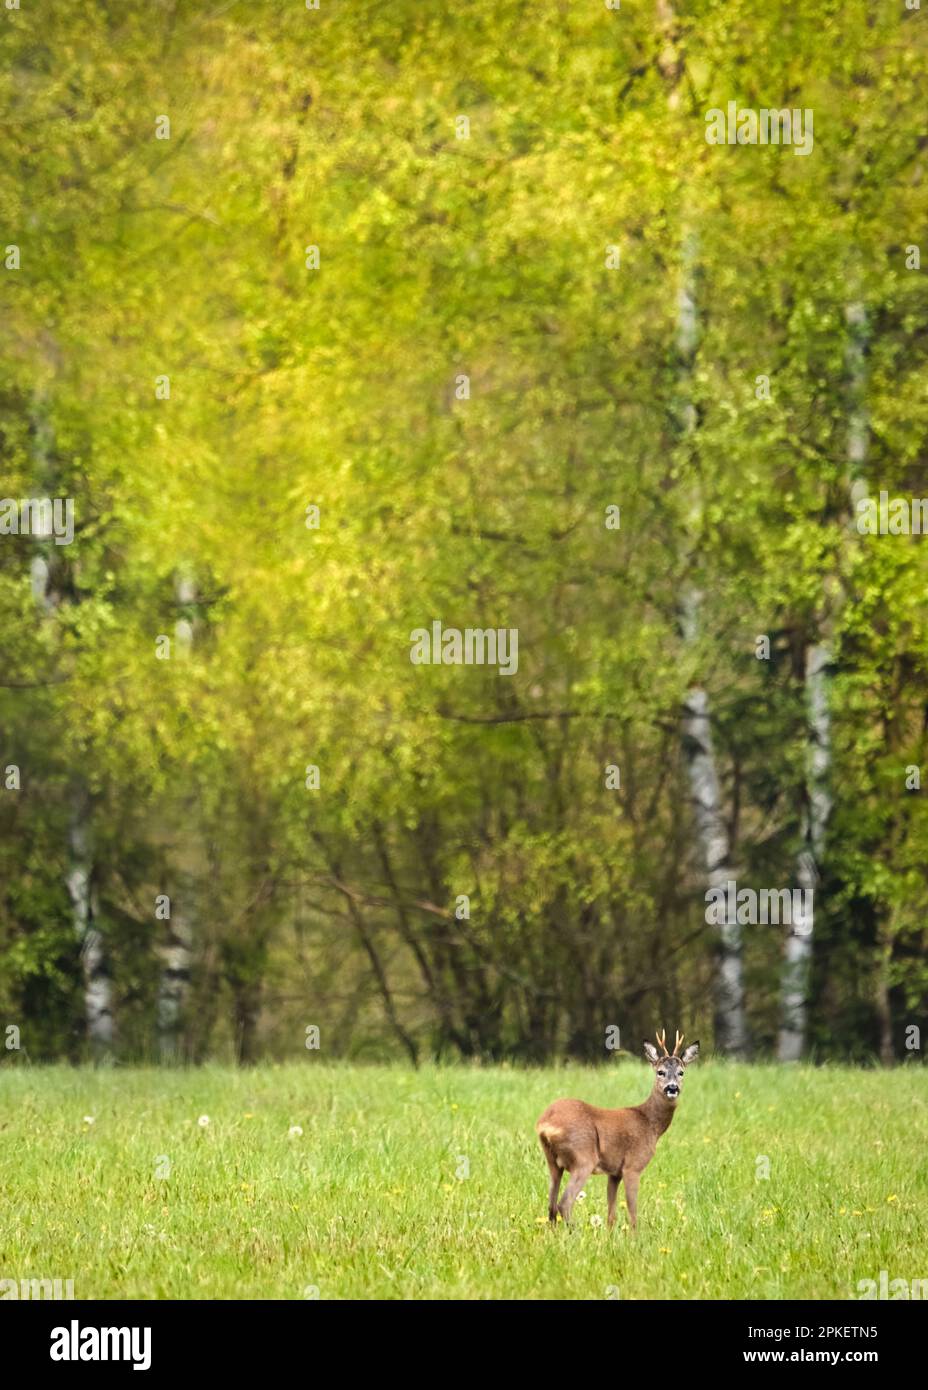 Un jeune mâle cerf ou buck sur une prairie verte luxuriante regardant dans l'appareil photo, les arbres de bouleau vert luxuriants dans l'arrière-plan Banque D'Images